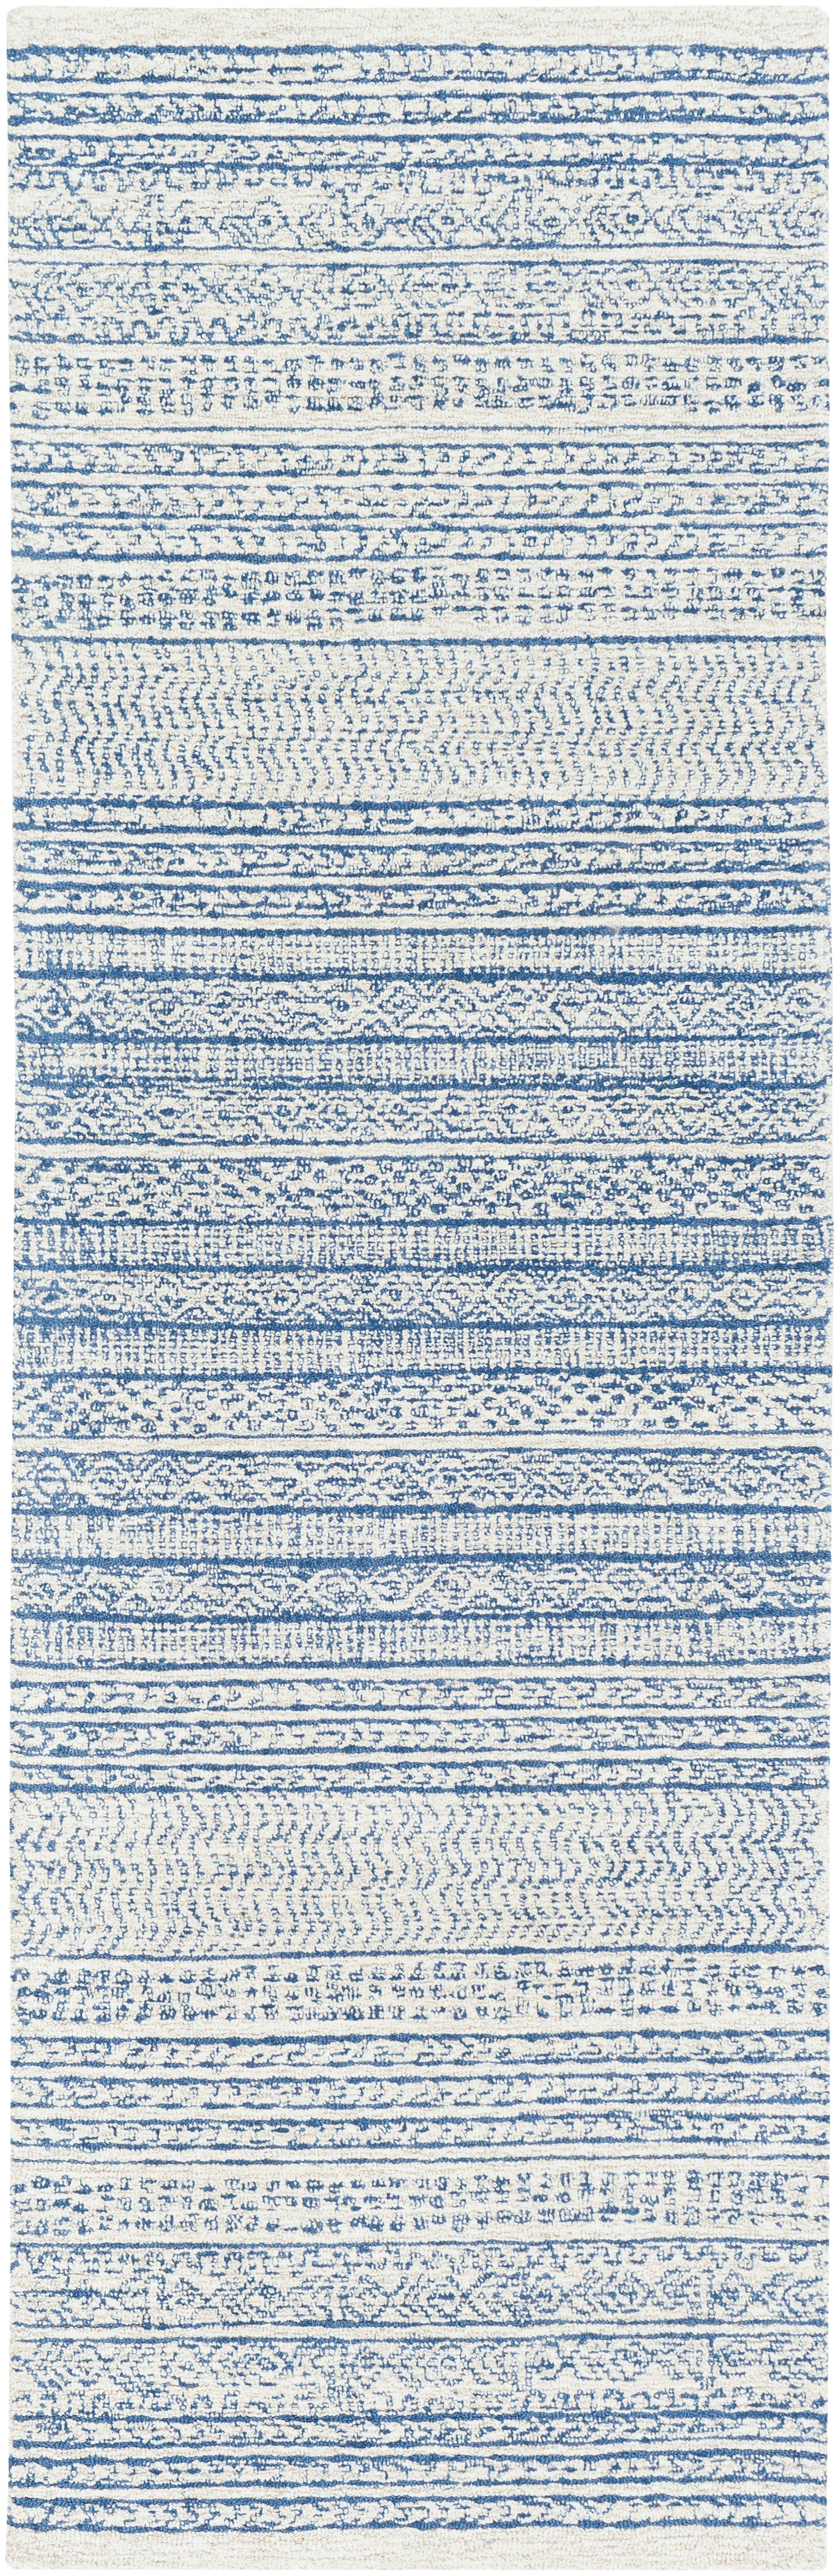 Maroc 23456 Hand Tufted Wool Indoor Area Rug by Surya Rugs